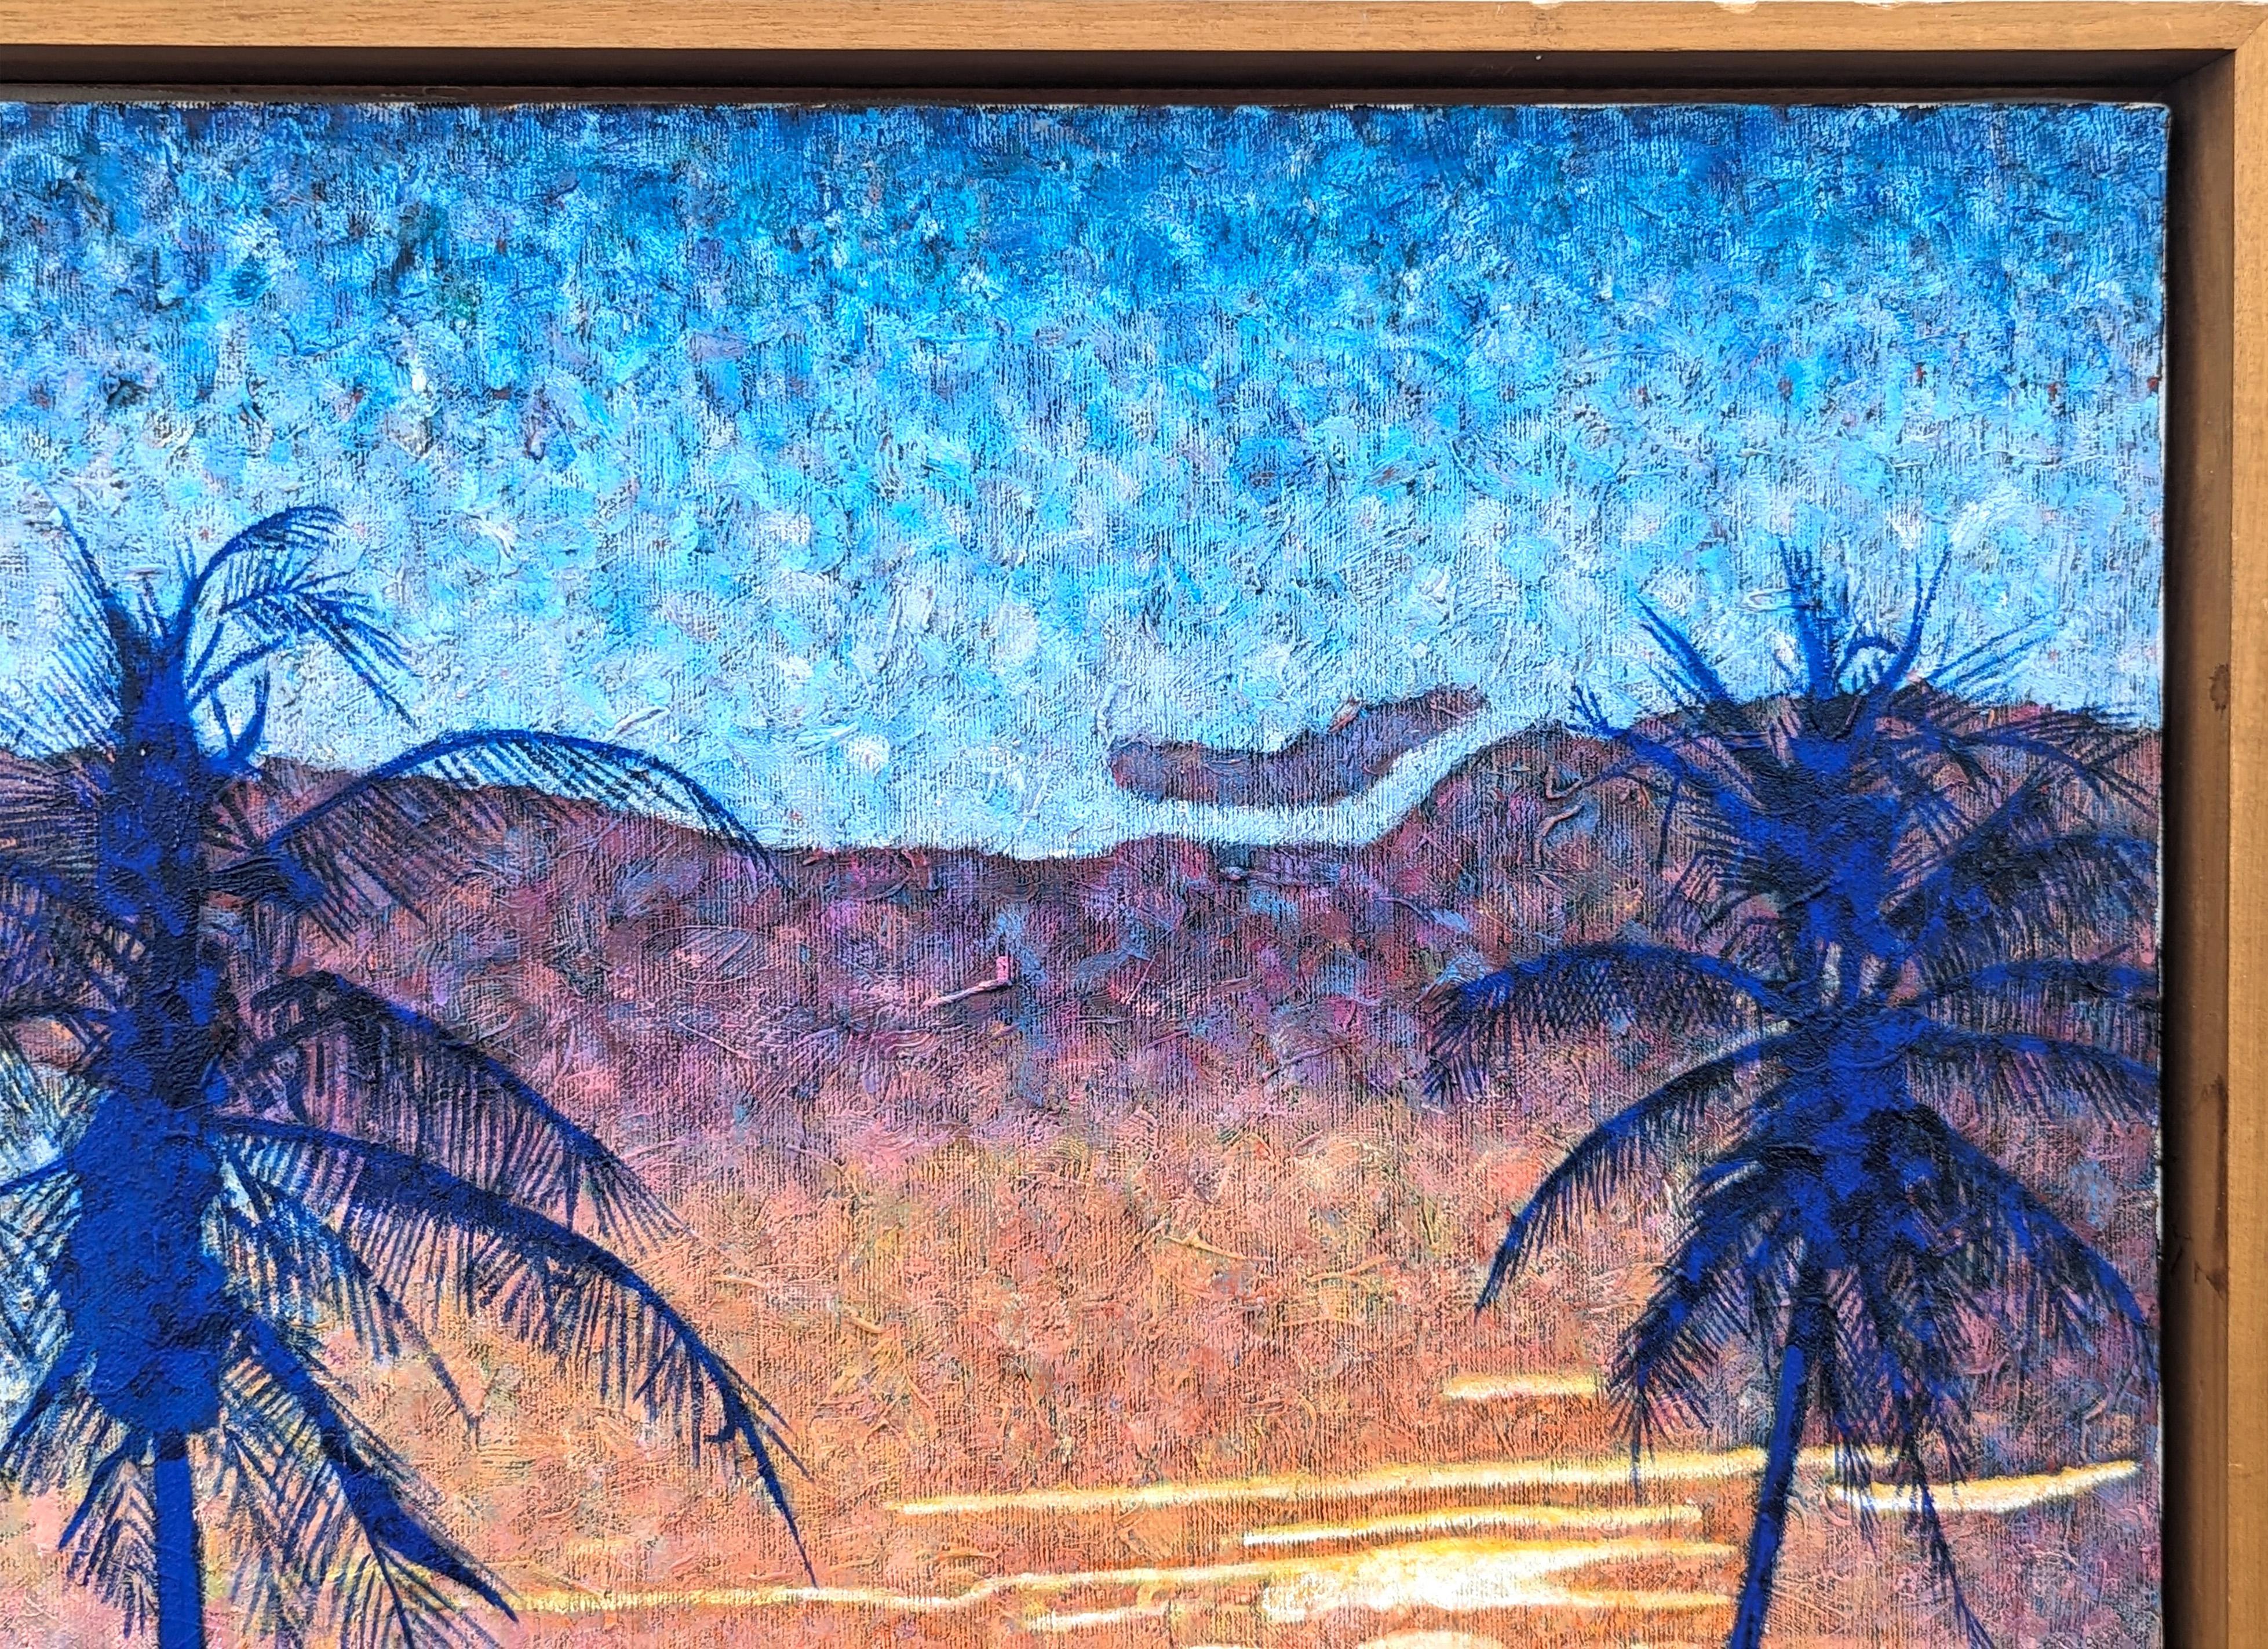 Peinture moderne de paysage tropical aux tons bleus de l'artiste Clark Fox, né au Texas. L'œuvre présente une représentation abstraite d'un coucher de soleil derrière des palmiers en utilisant le pointillisme, une pratique qui consiste à appliquer